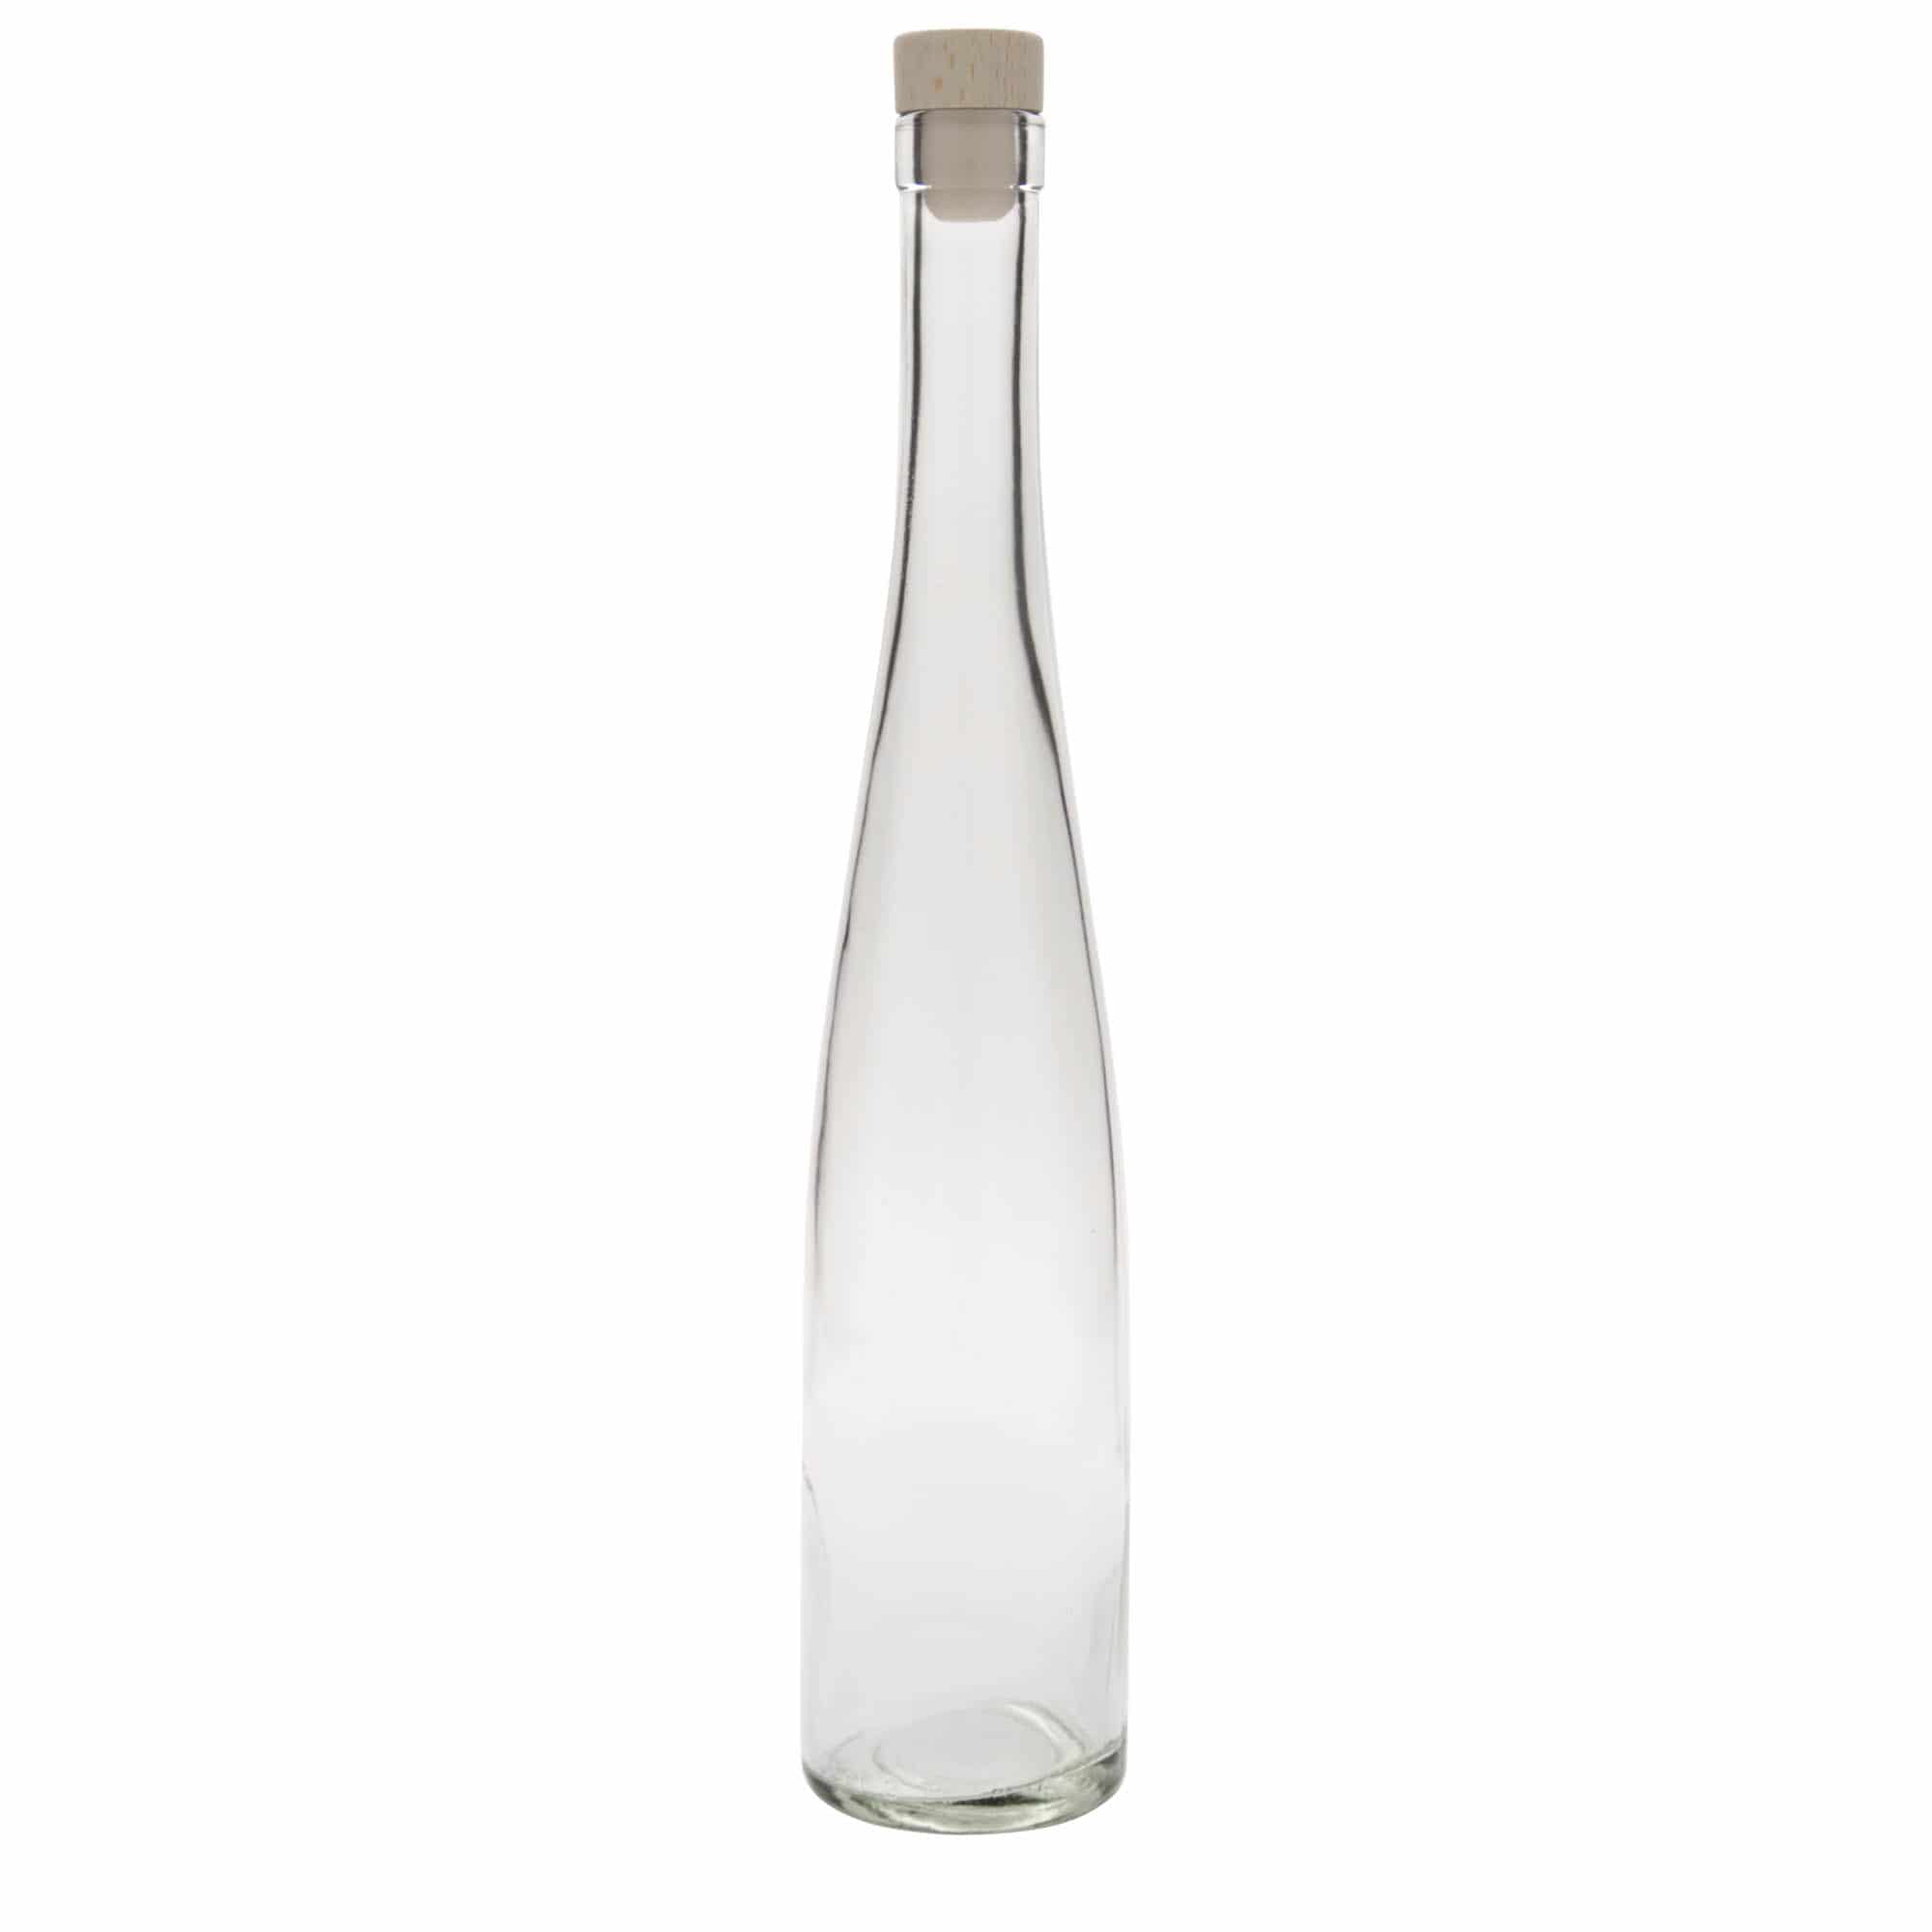 500 ml glass bottle 'Weinschlegel', closure: cork